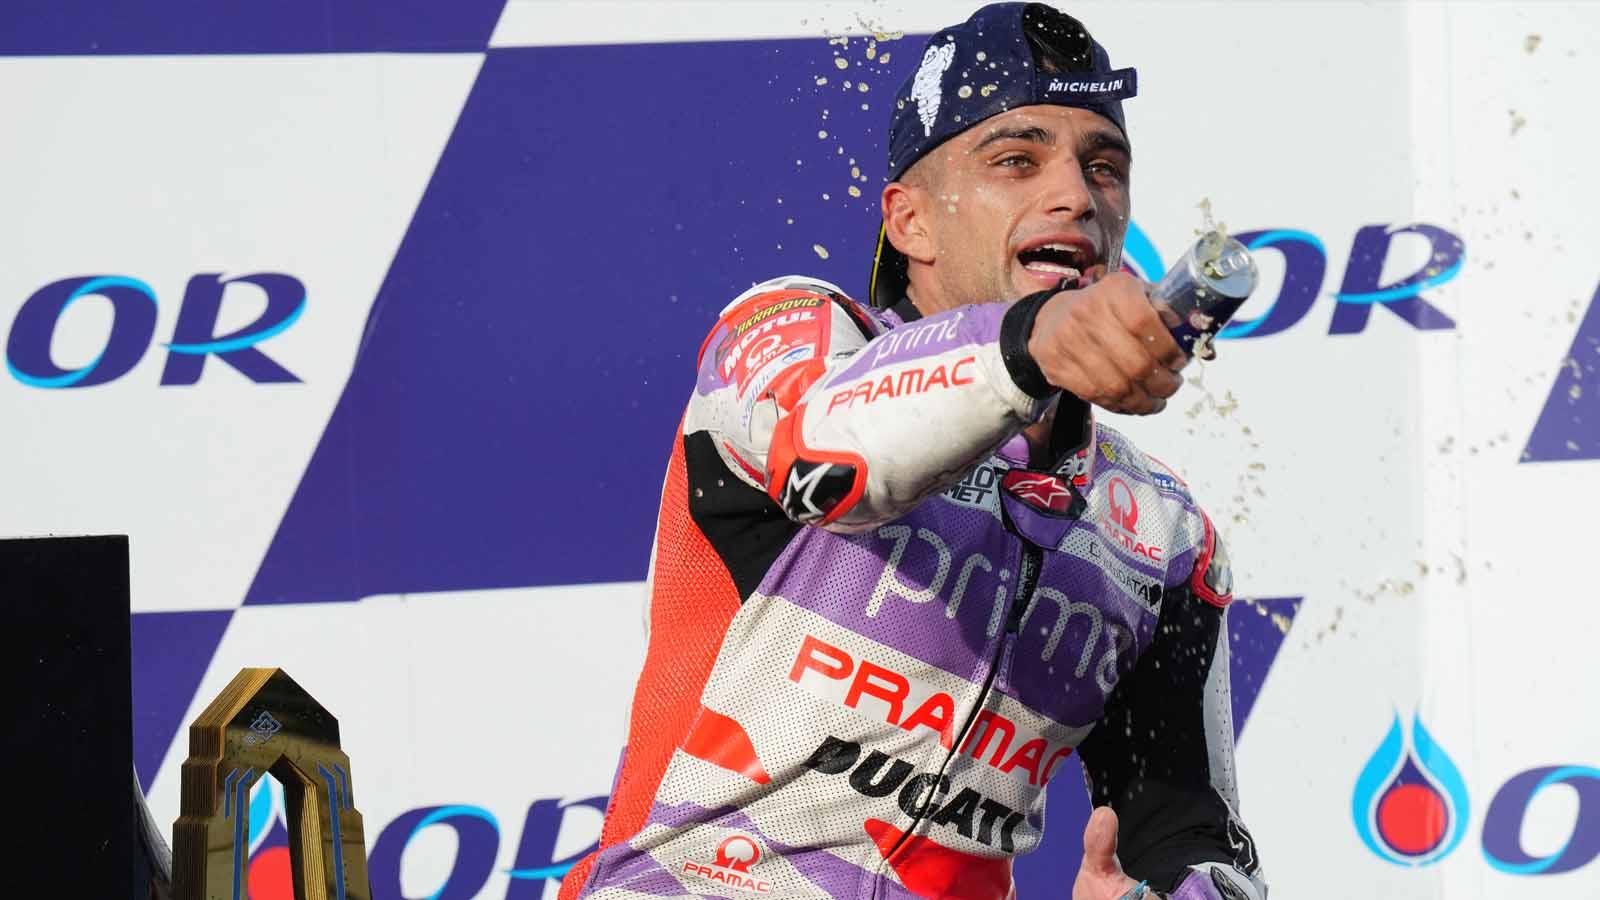 Jorge Martin dari Prima Pramac Racing merayakan di podium usai memenangkan balapan MotoGP 2023. (Foto: REUTERS/Athit Perawonmetha)